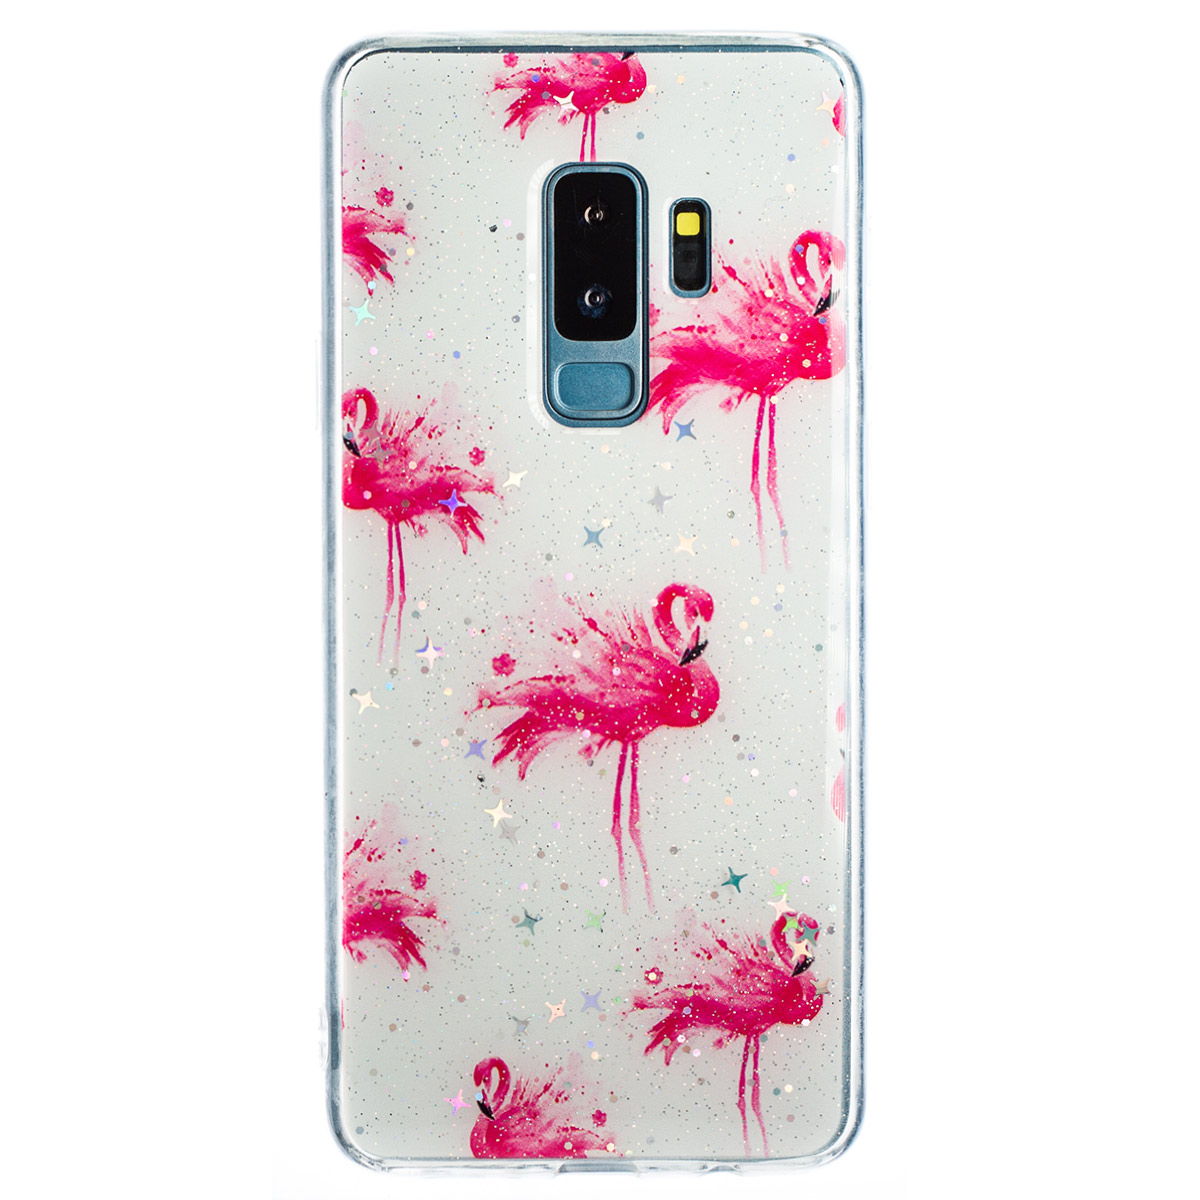 Husa Fashion Samsung Galaxy S8 Plus, Flamingo thumb